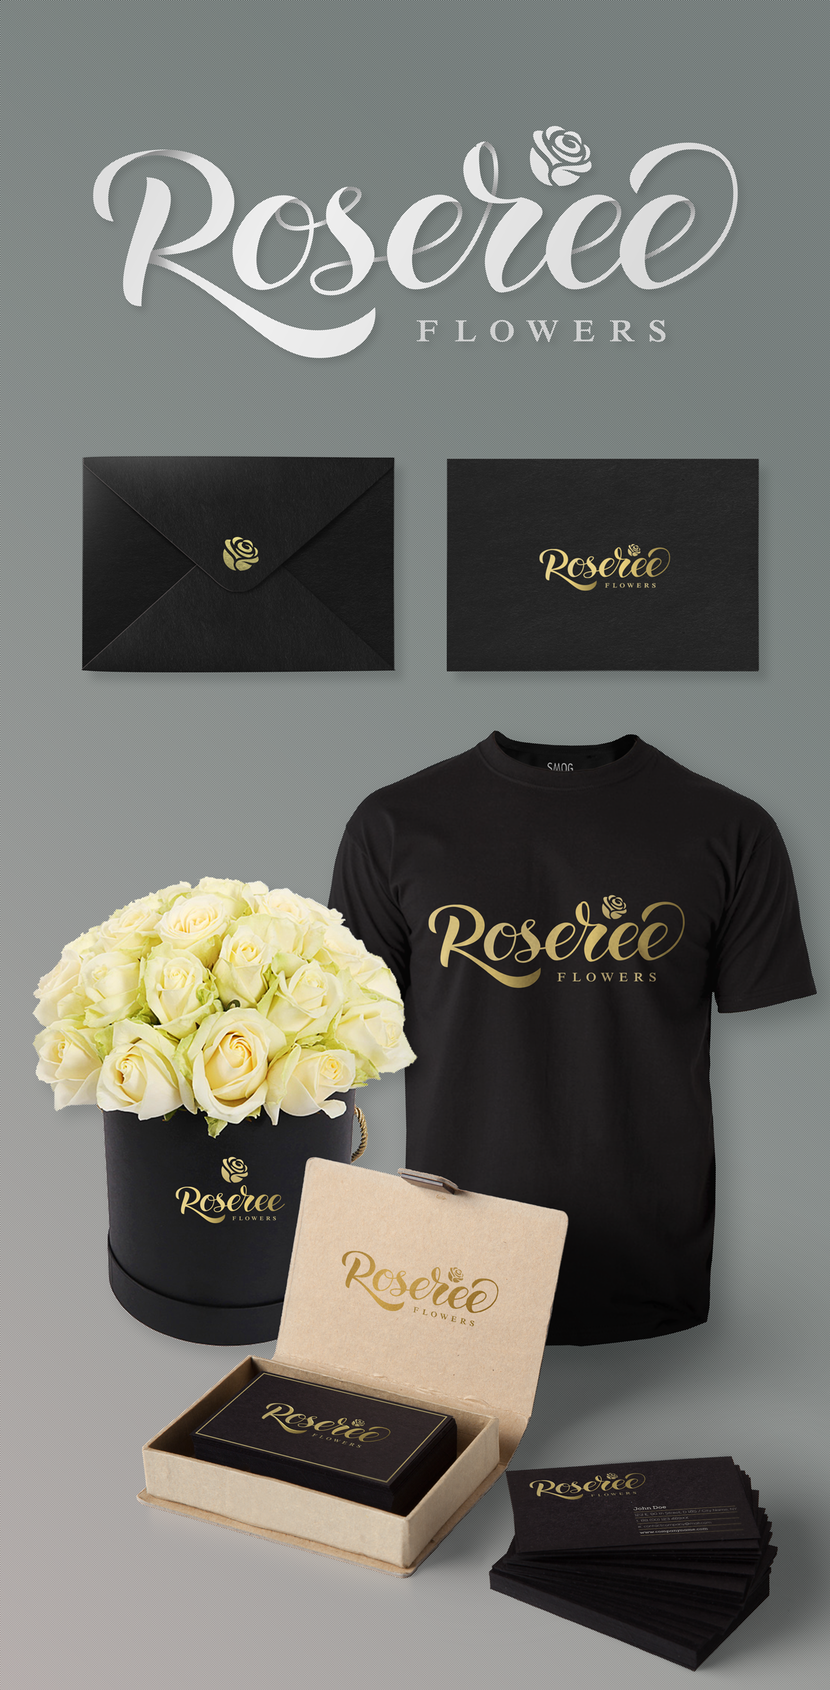 Проработка логотипа + размещение на рекламных носителях Корпоративный стиль для компании по доставки цветов Roserée